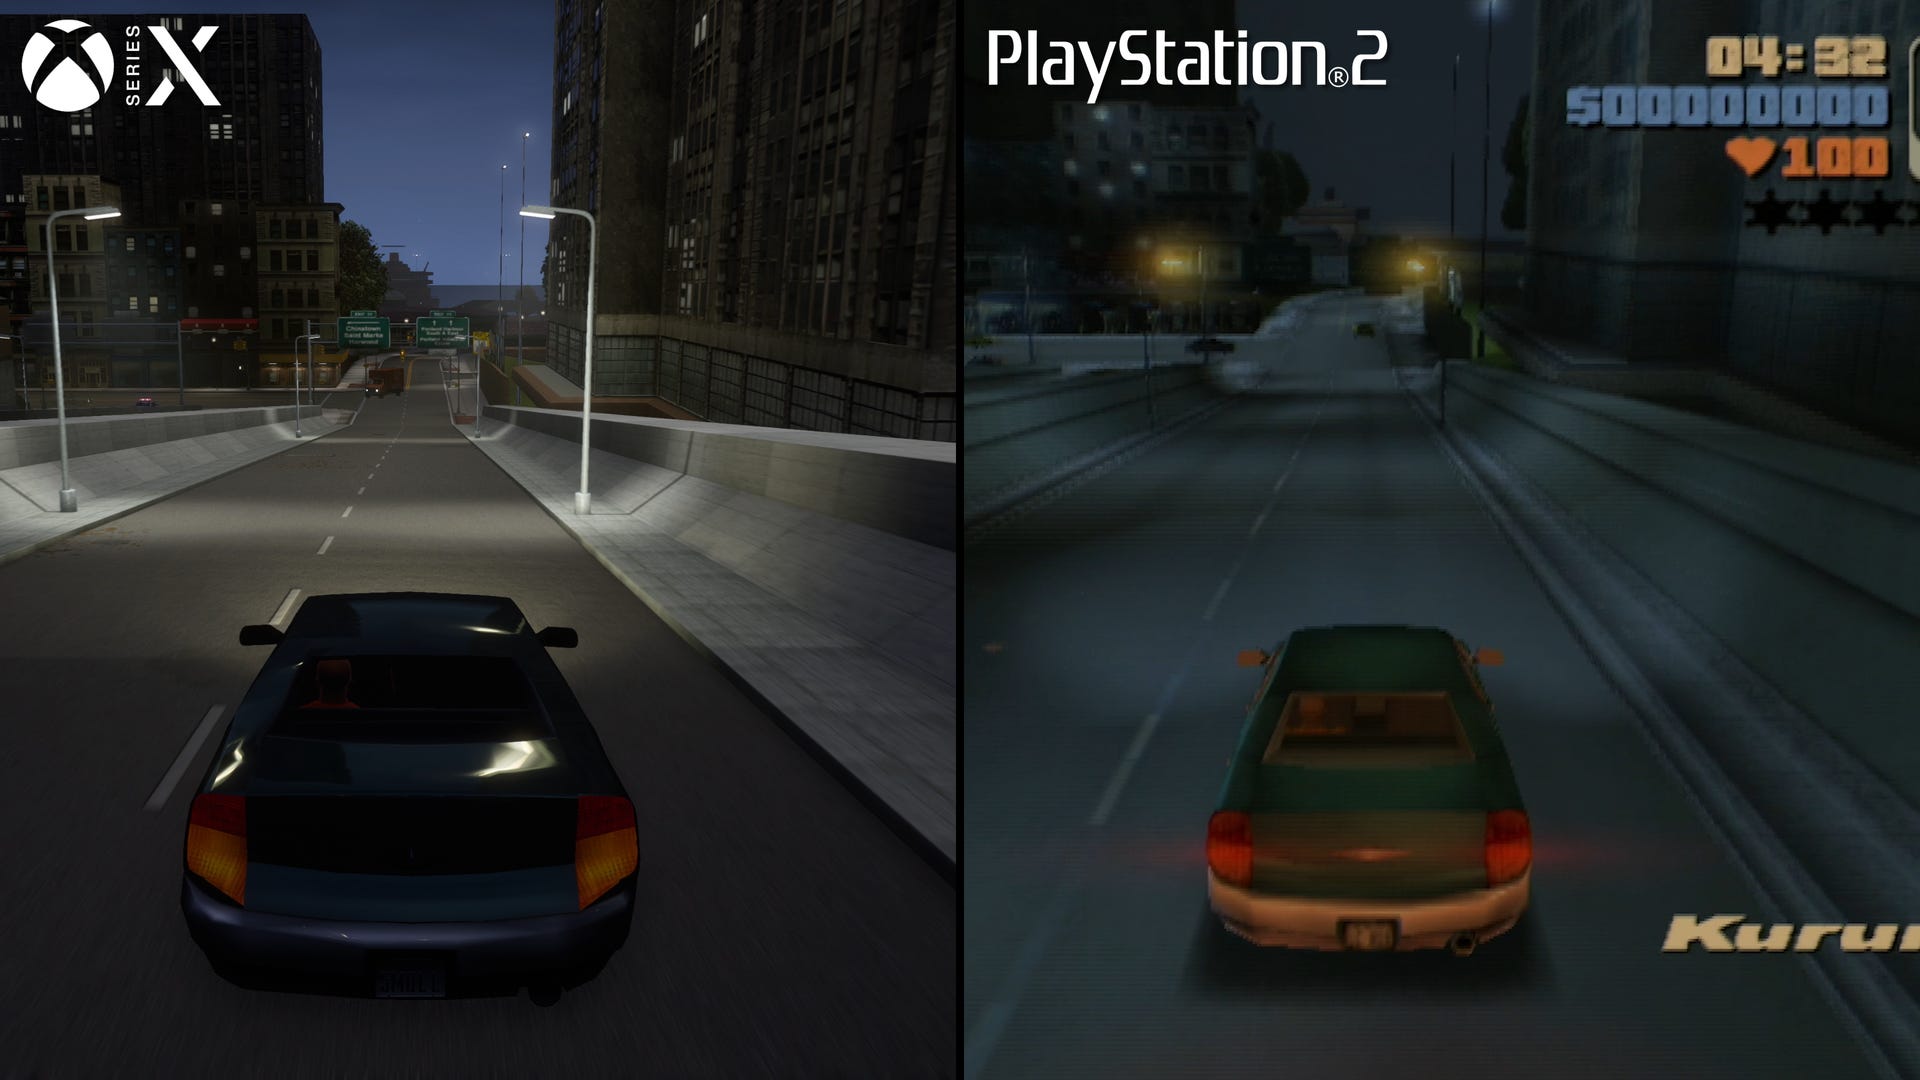 GTA 3 Definitive Edition Comparison - PS2 / Xbox / PC / Mobile / Remaster 